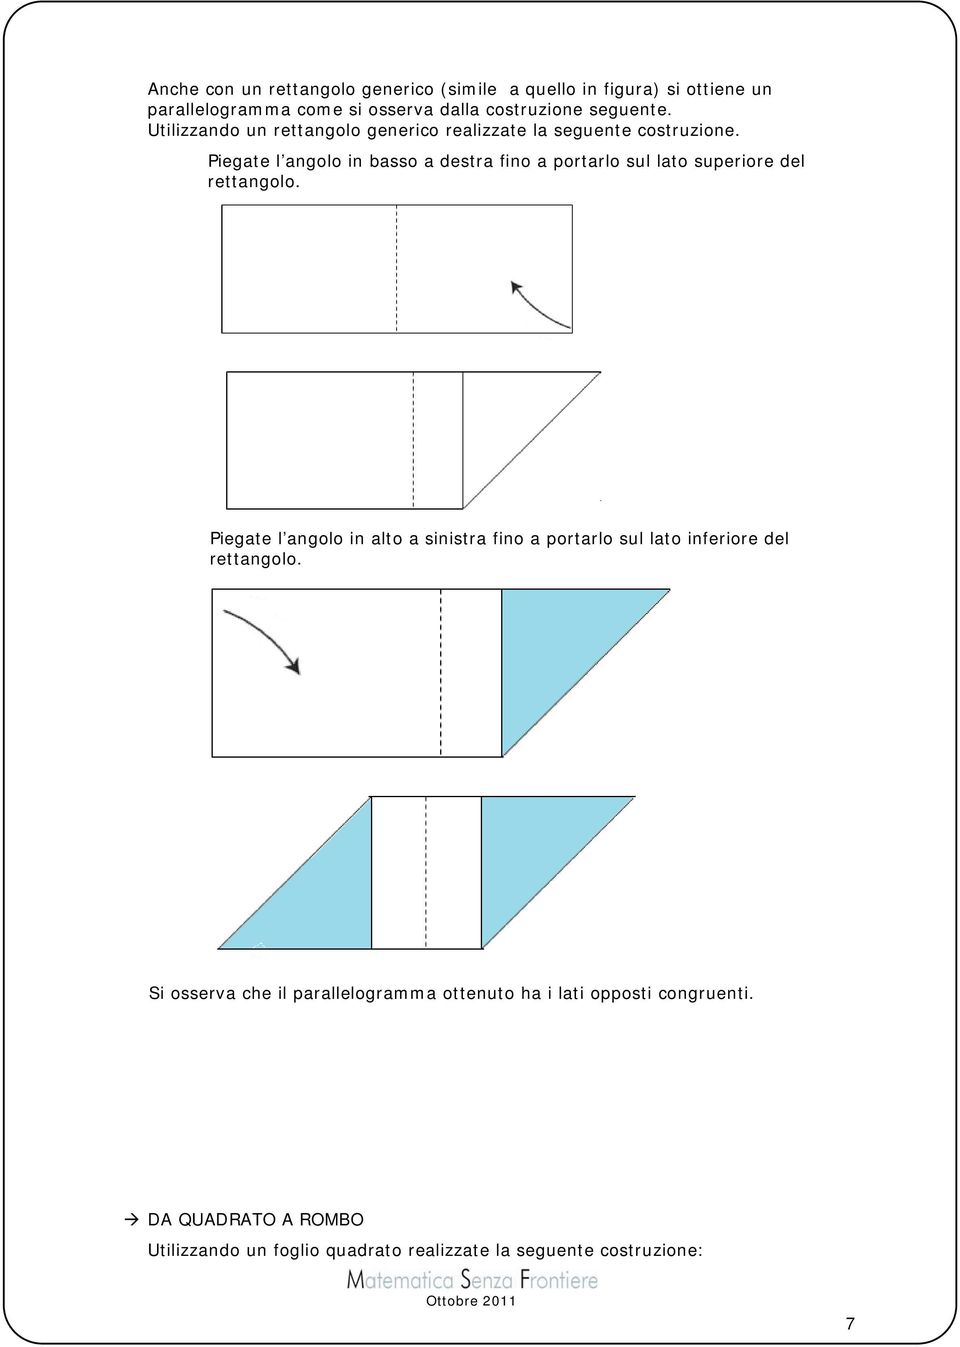 Piegate l angolo in basso a destra fino a portarlo sul lato superiore del rettangolo.